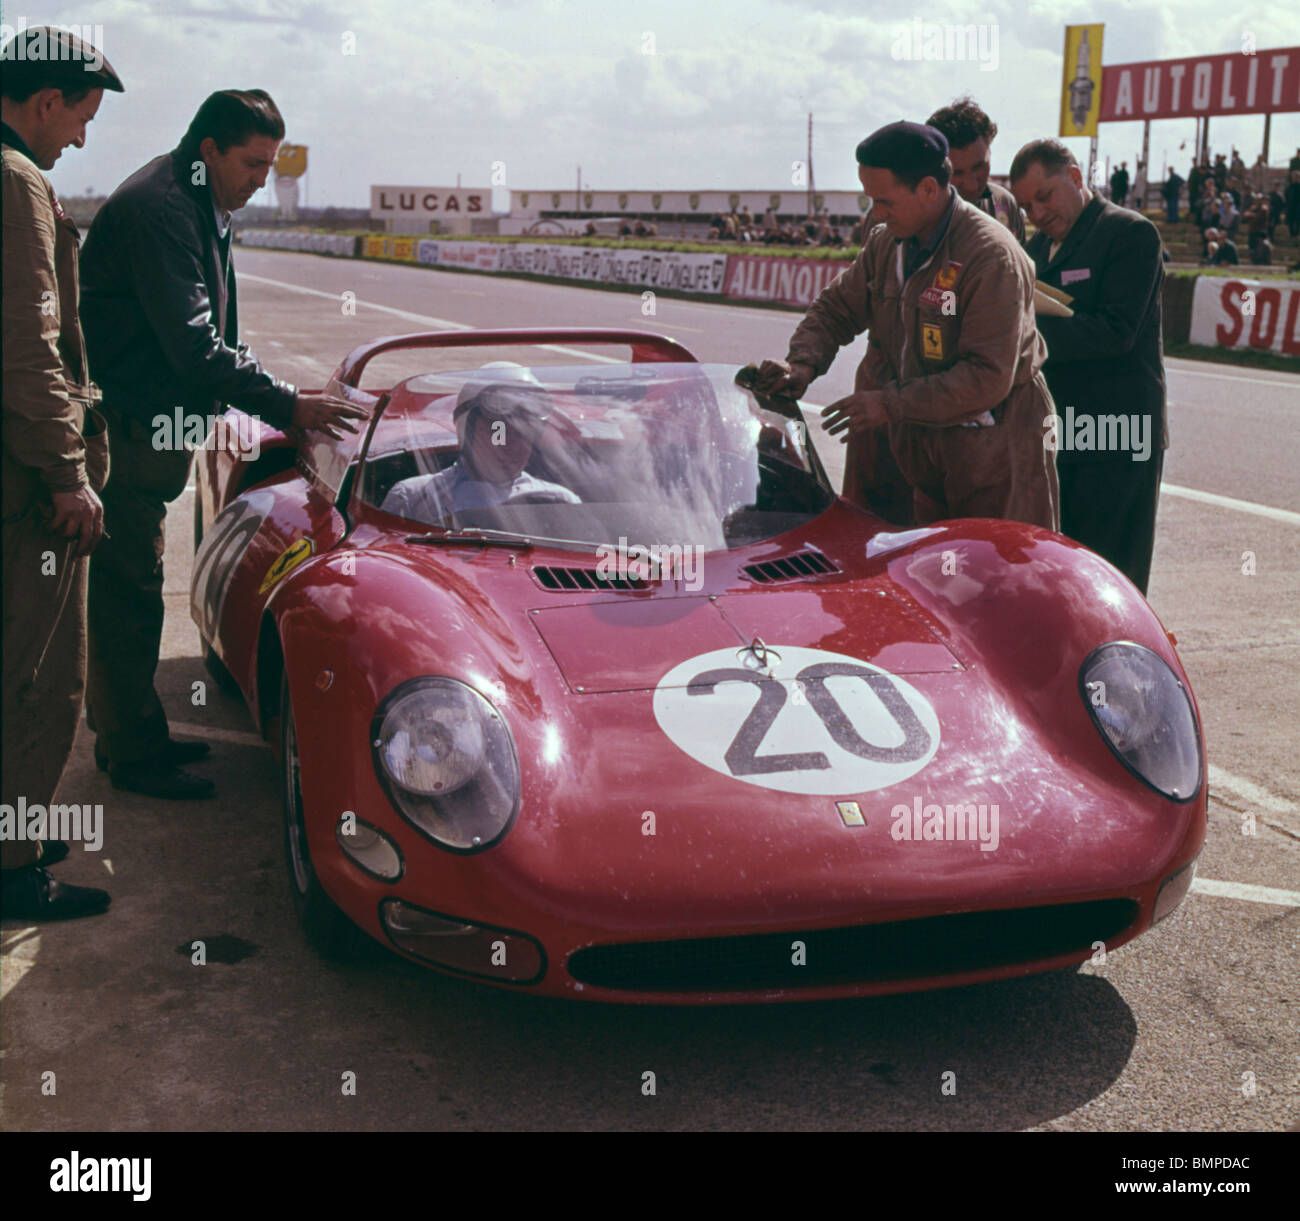 1965 Le Mans, Ferrari 330 P2 of Guichet and Parkes Stock Photo